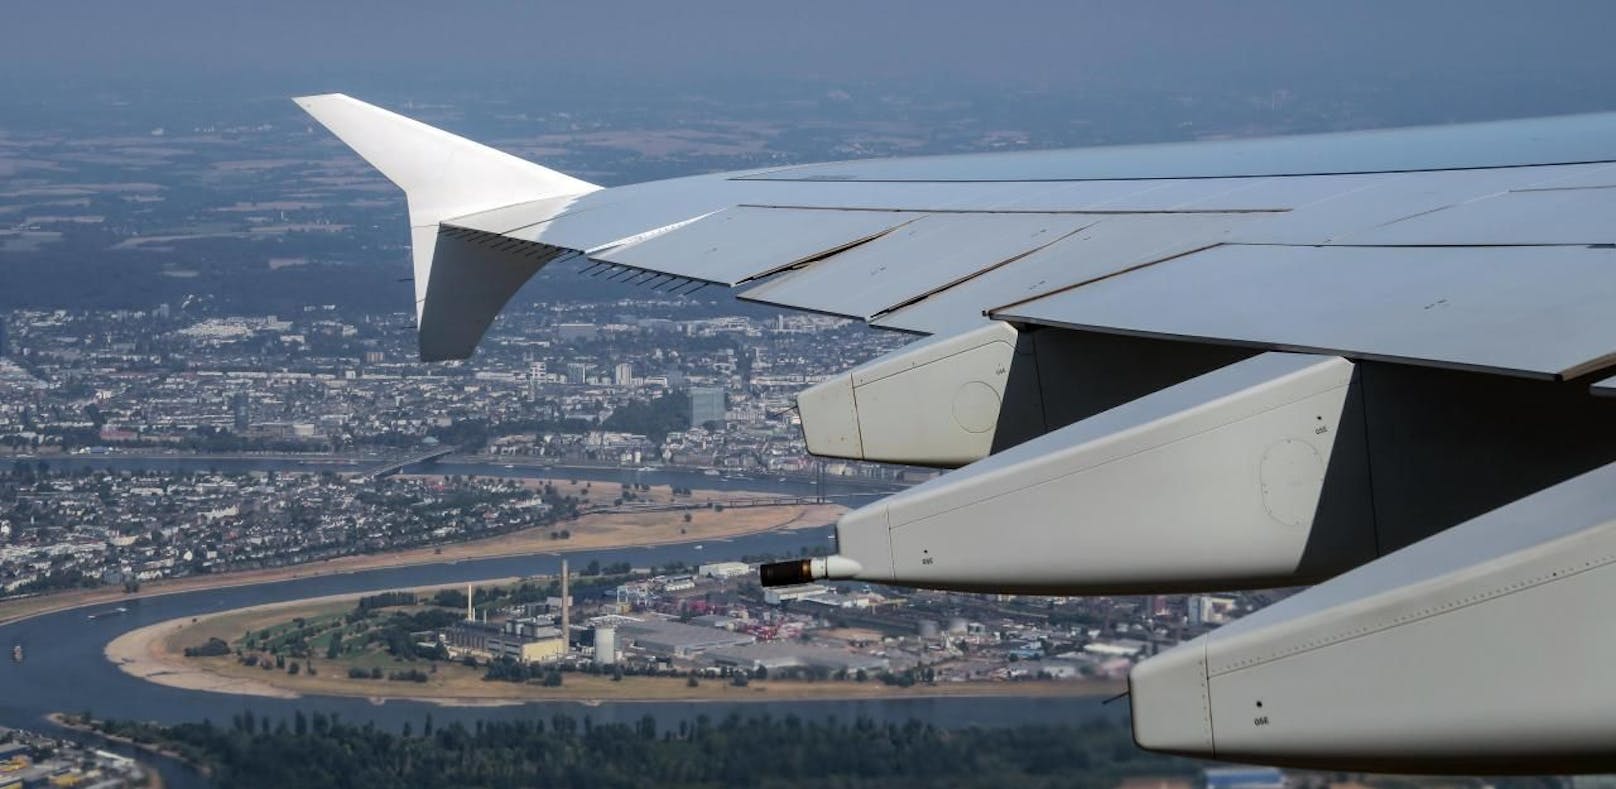 Airbus lässt Haarrisse an A380-Flügeln untersuchen